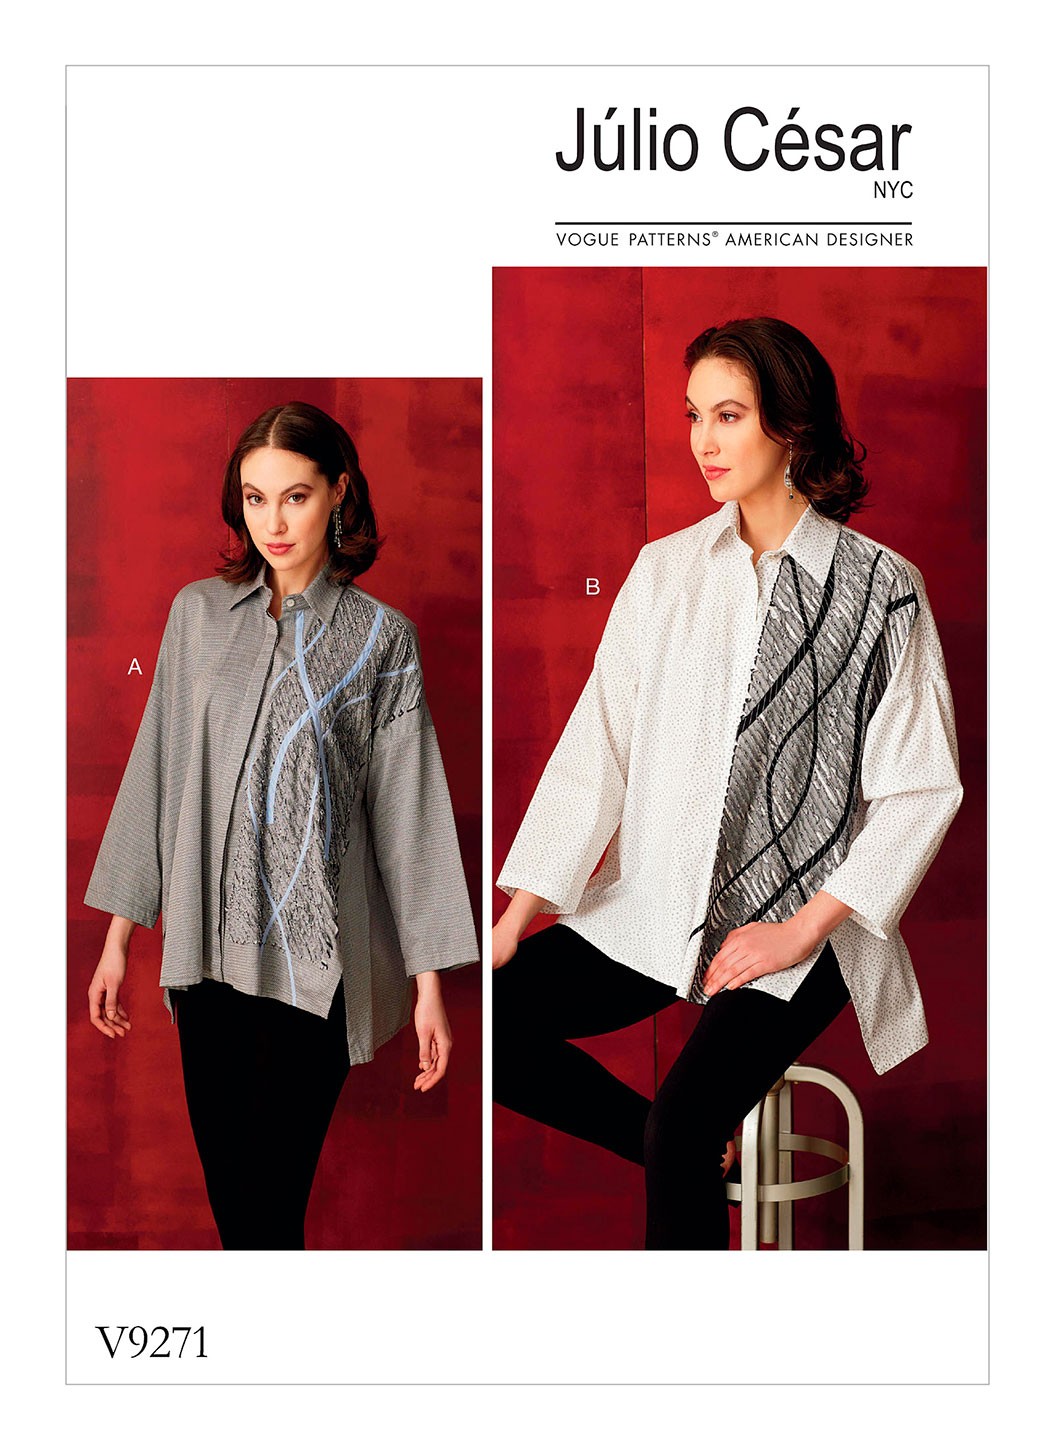 Выкройка Vogue №9271 — Блузка-рубашка с аппликацией в технике синель от Julio Cesar NYC